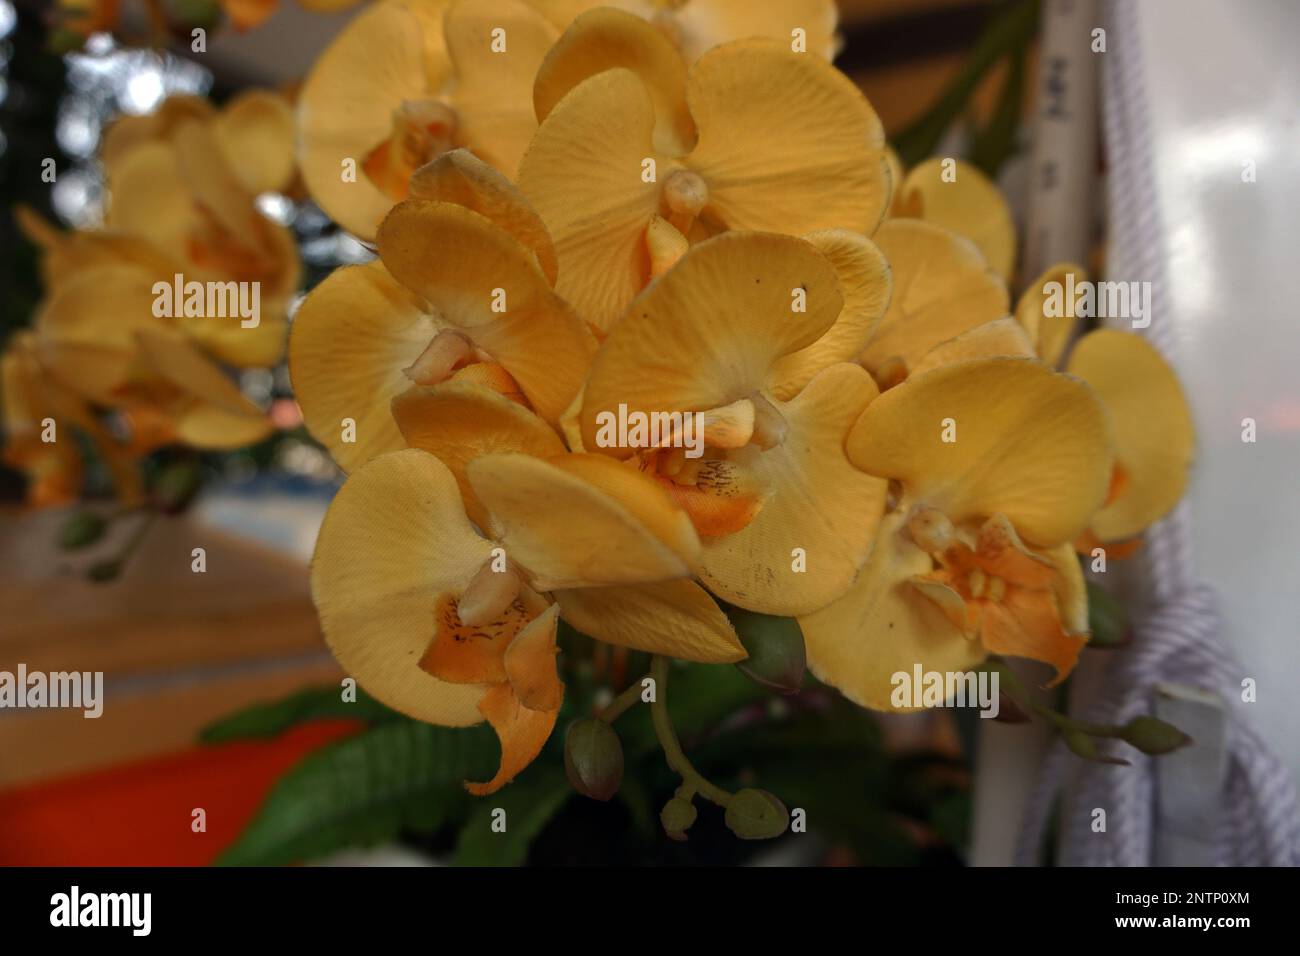 Immagine di orchidee plastiche luminose e belle Foto Stock